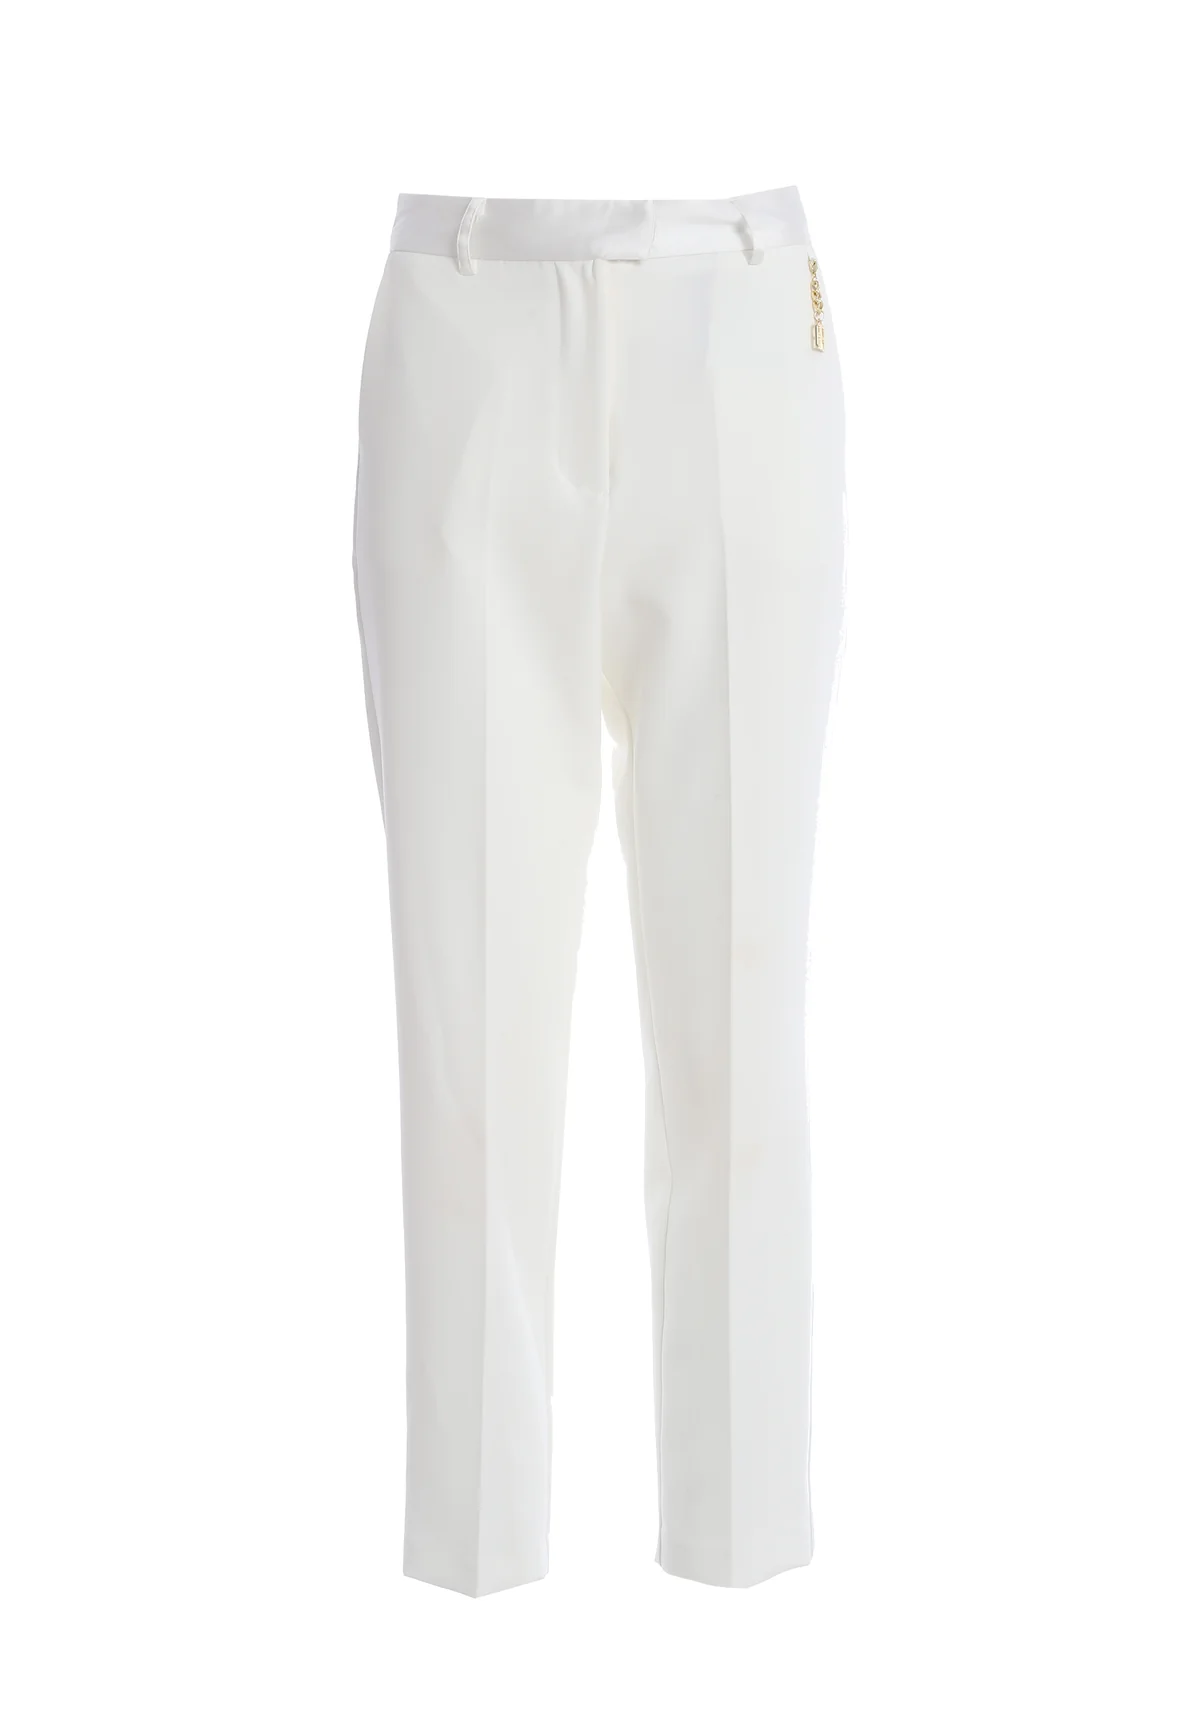 FRACOMINA pantalón básico color blanco